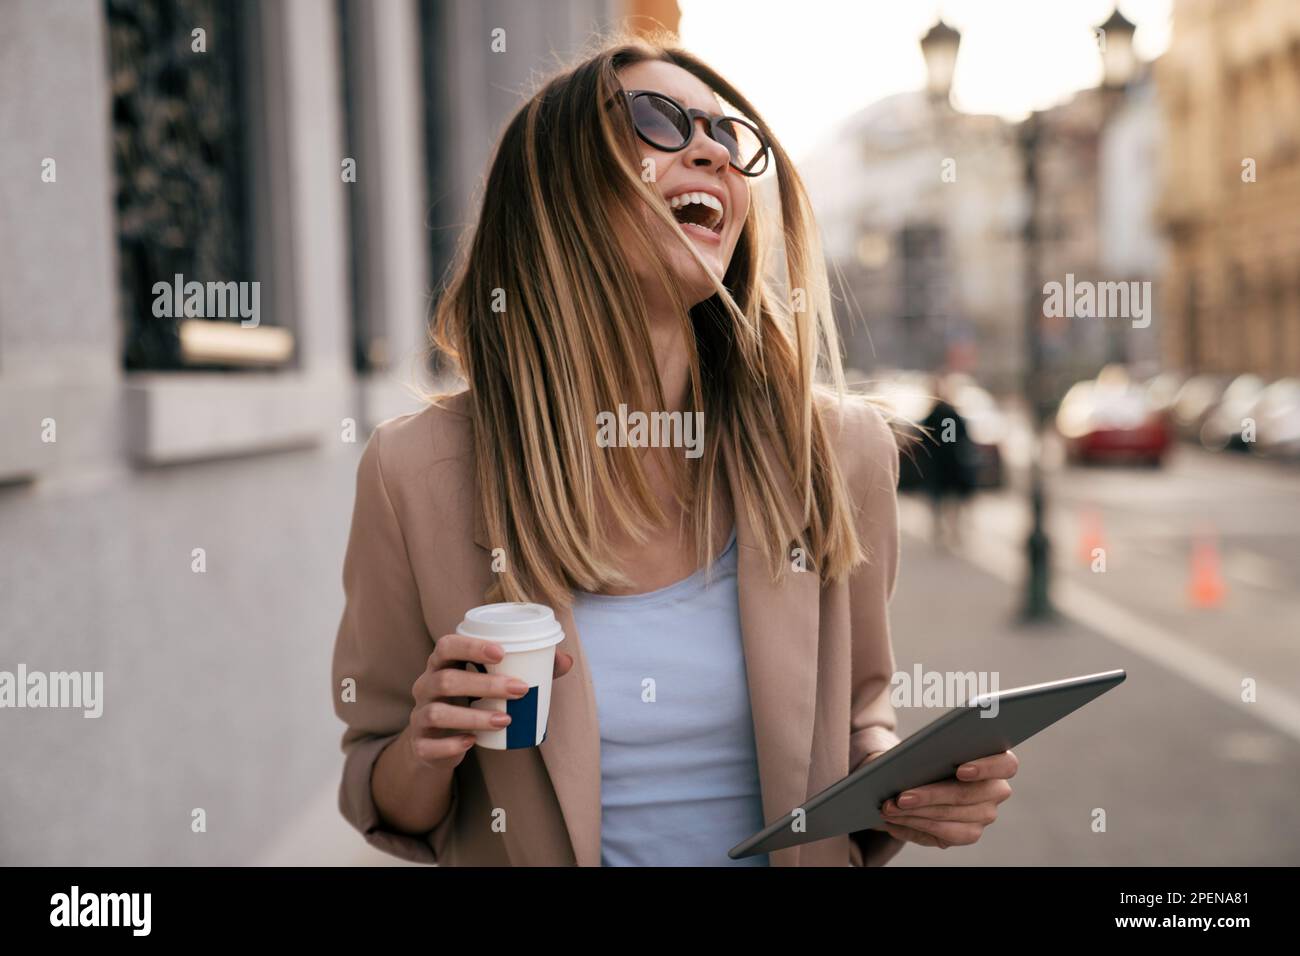 Portrait d'une femme réussie utilisant une tablette numérique pendant une pause rapide en milieu urbain Banque D'Images